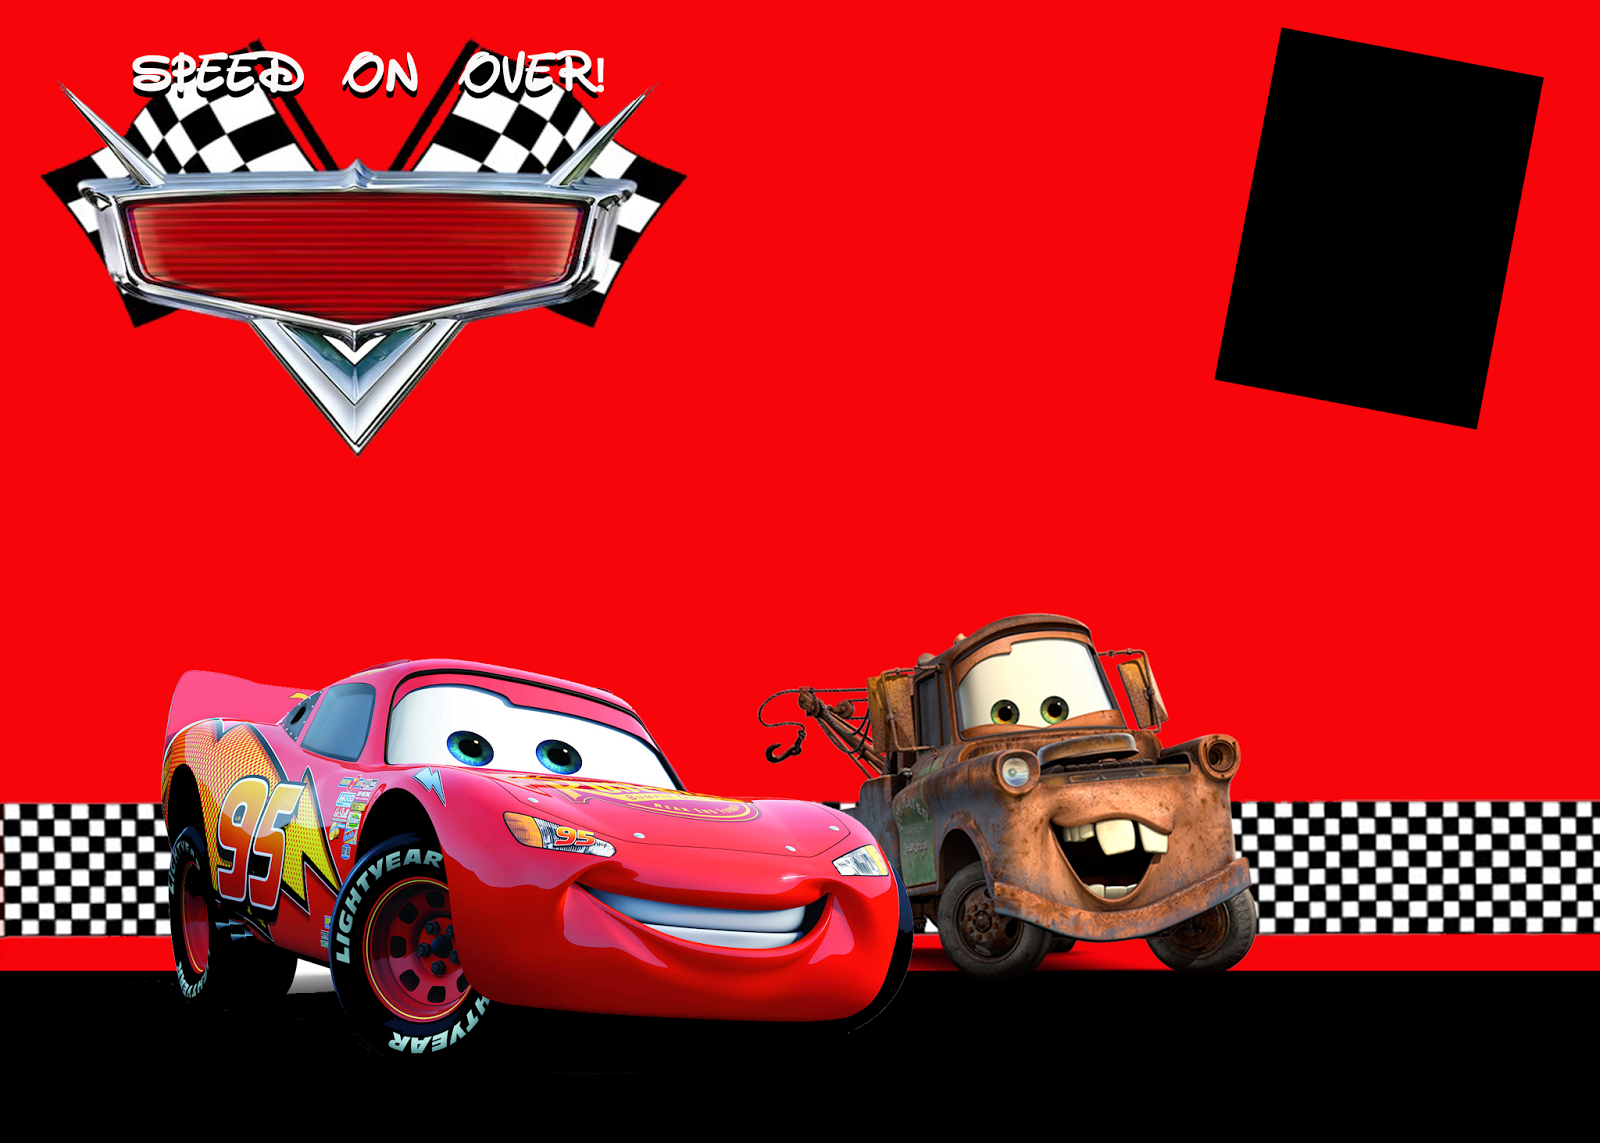 papel pintado temático del coche,rojo,vehículo,dibujos animados,coche,juegos